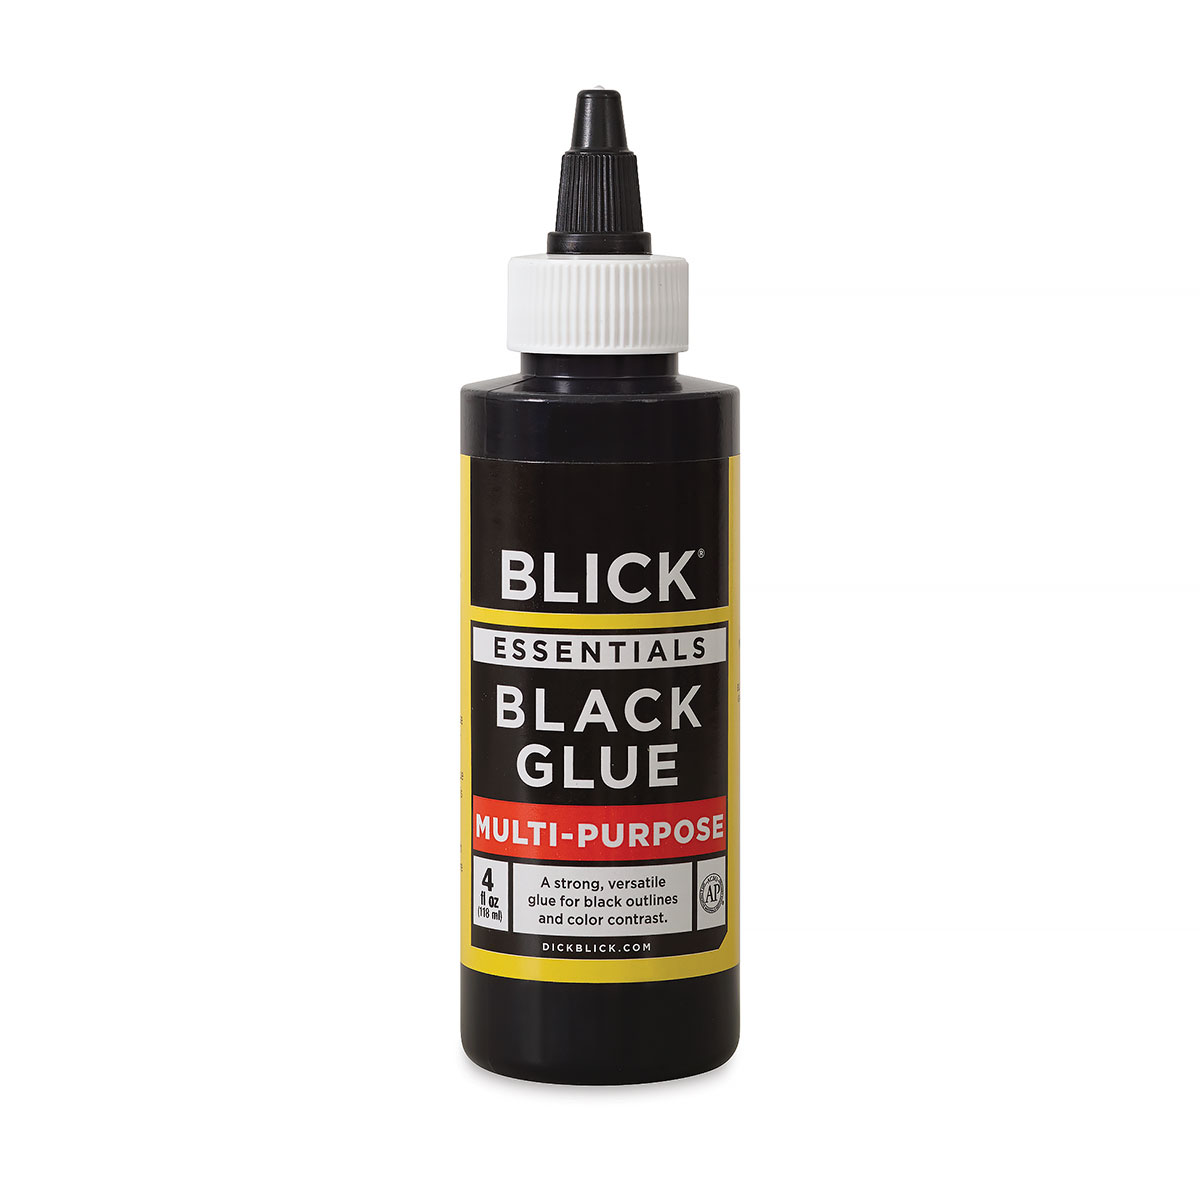 Blick Essentials Black Glue